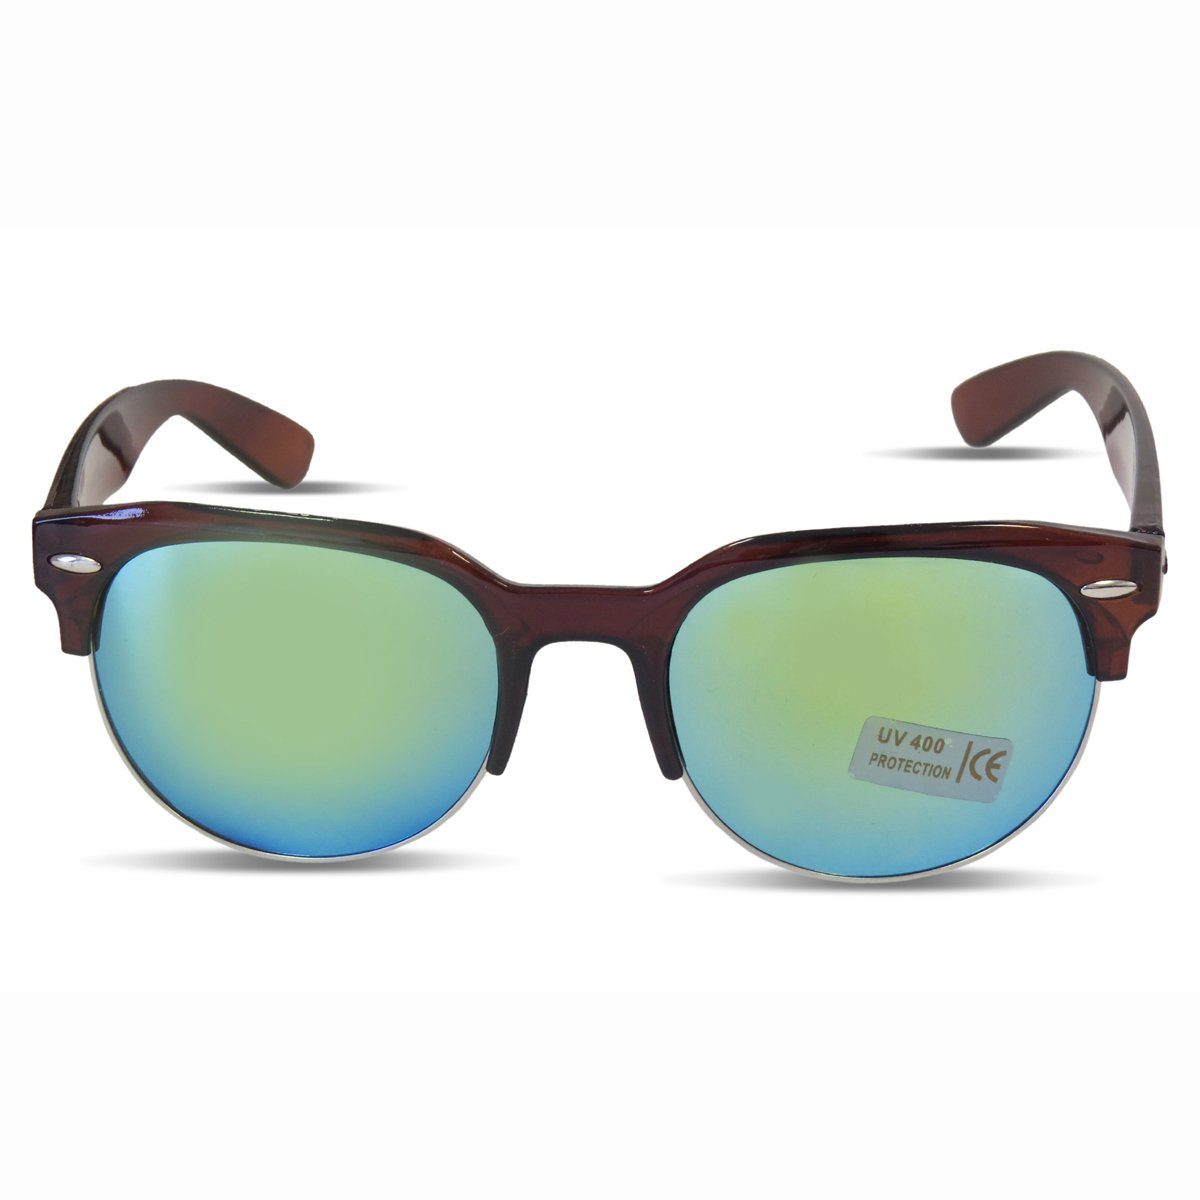 Sonia Originelli Sonnenbrille Sonnenbrille Modern Verspiegelt Onesize braun-gruen Sommer Klassisch